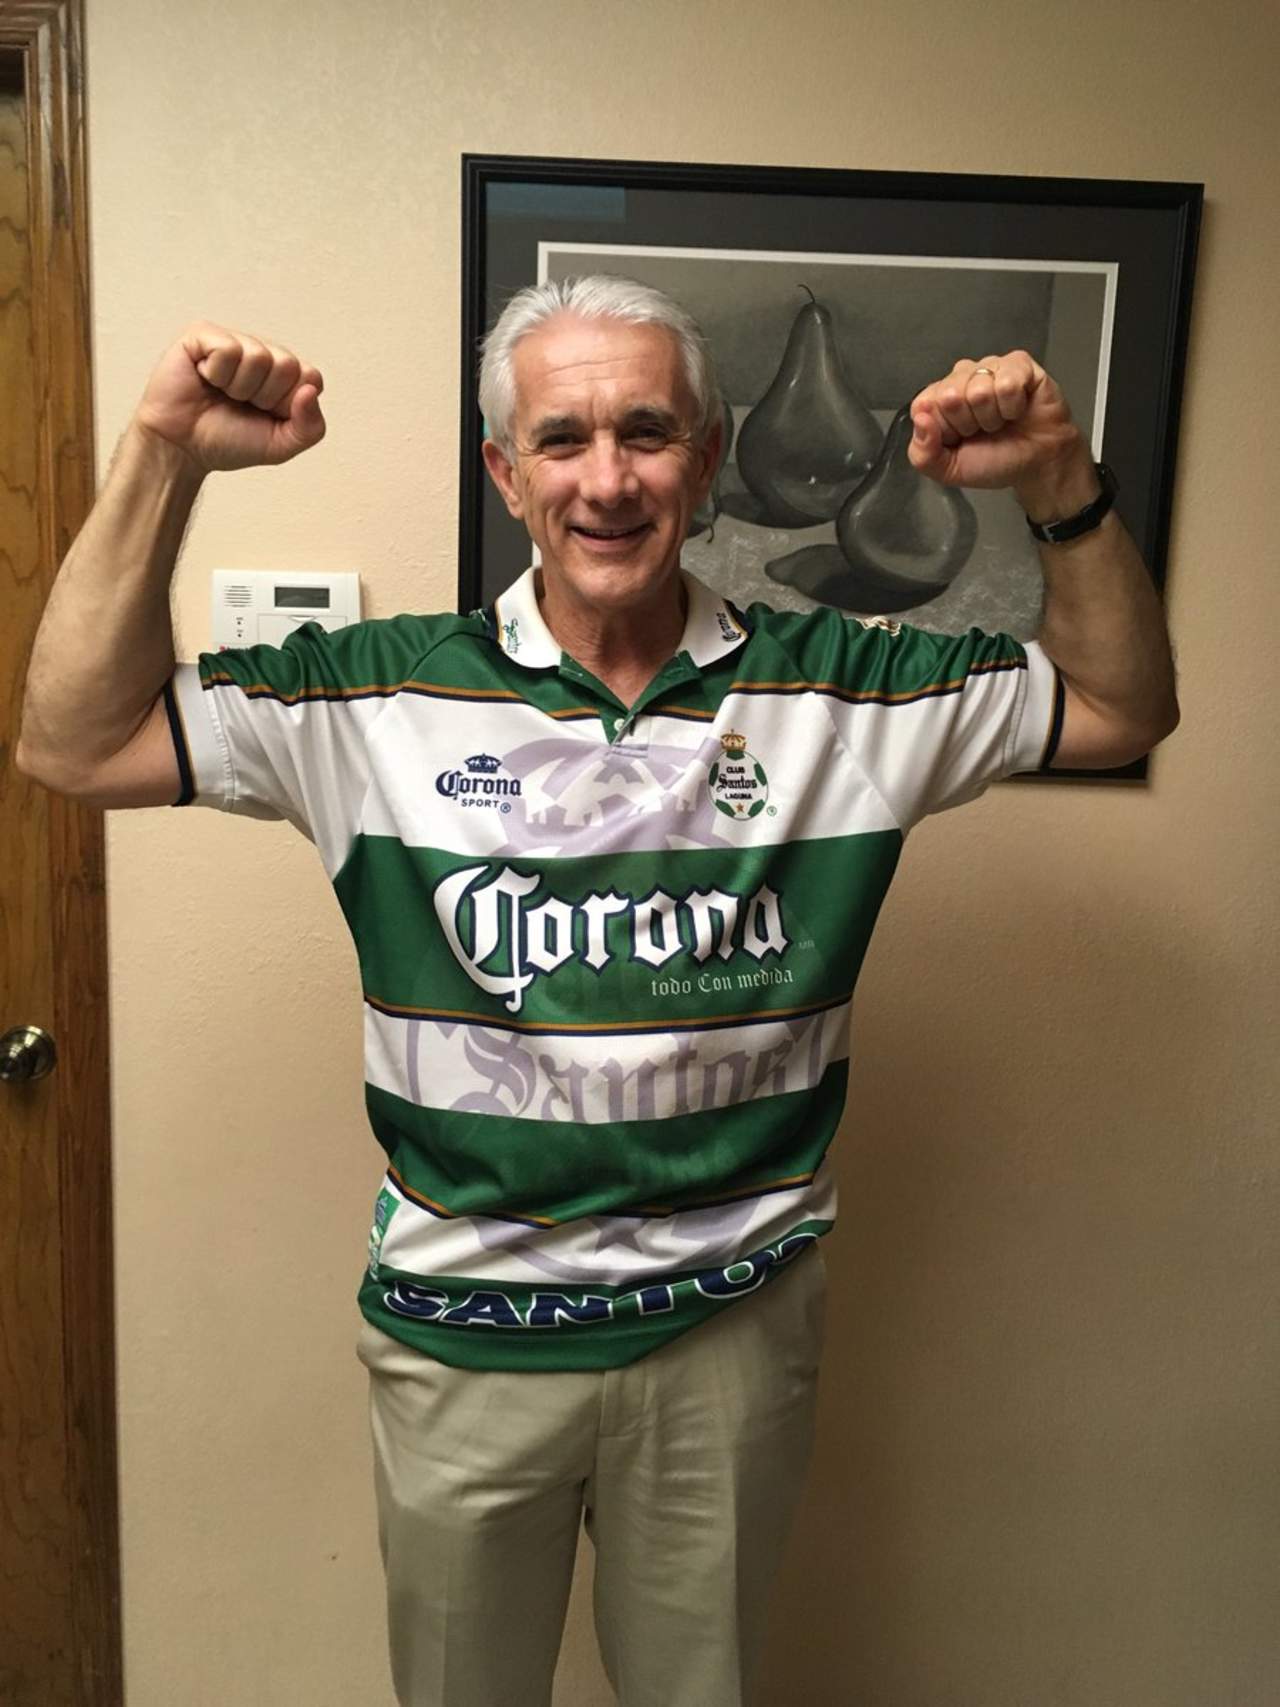 Raúl Allegre, exjugador de la NFL y comentarista deportivo, celebró ayer subiendo una foto con su jersey que le regalaron cuando cumplió 40 años de edad, según aseguró en un tuit. (Especial)